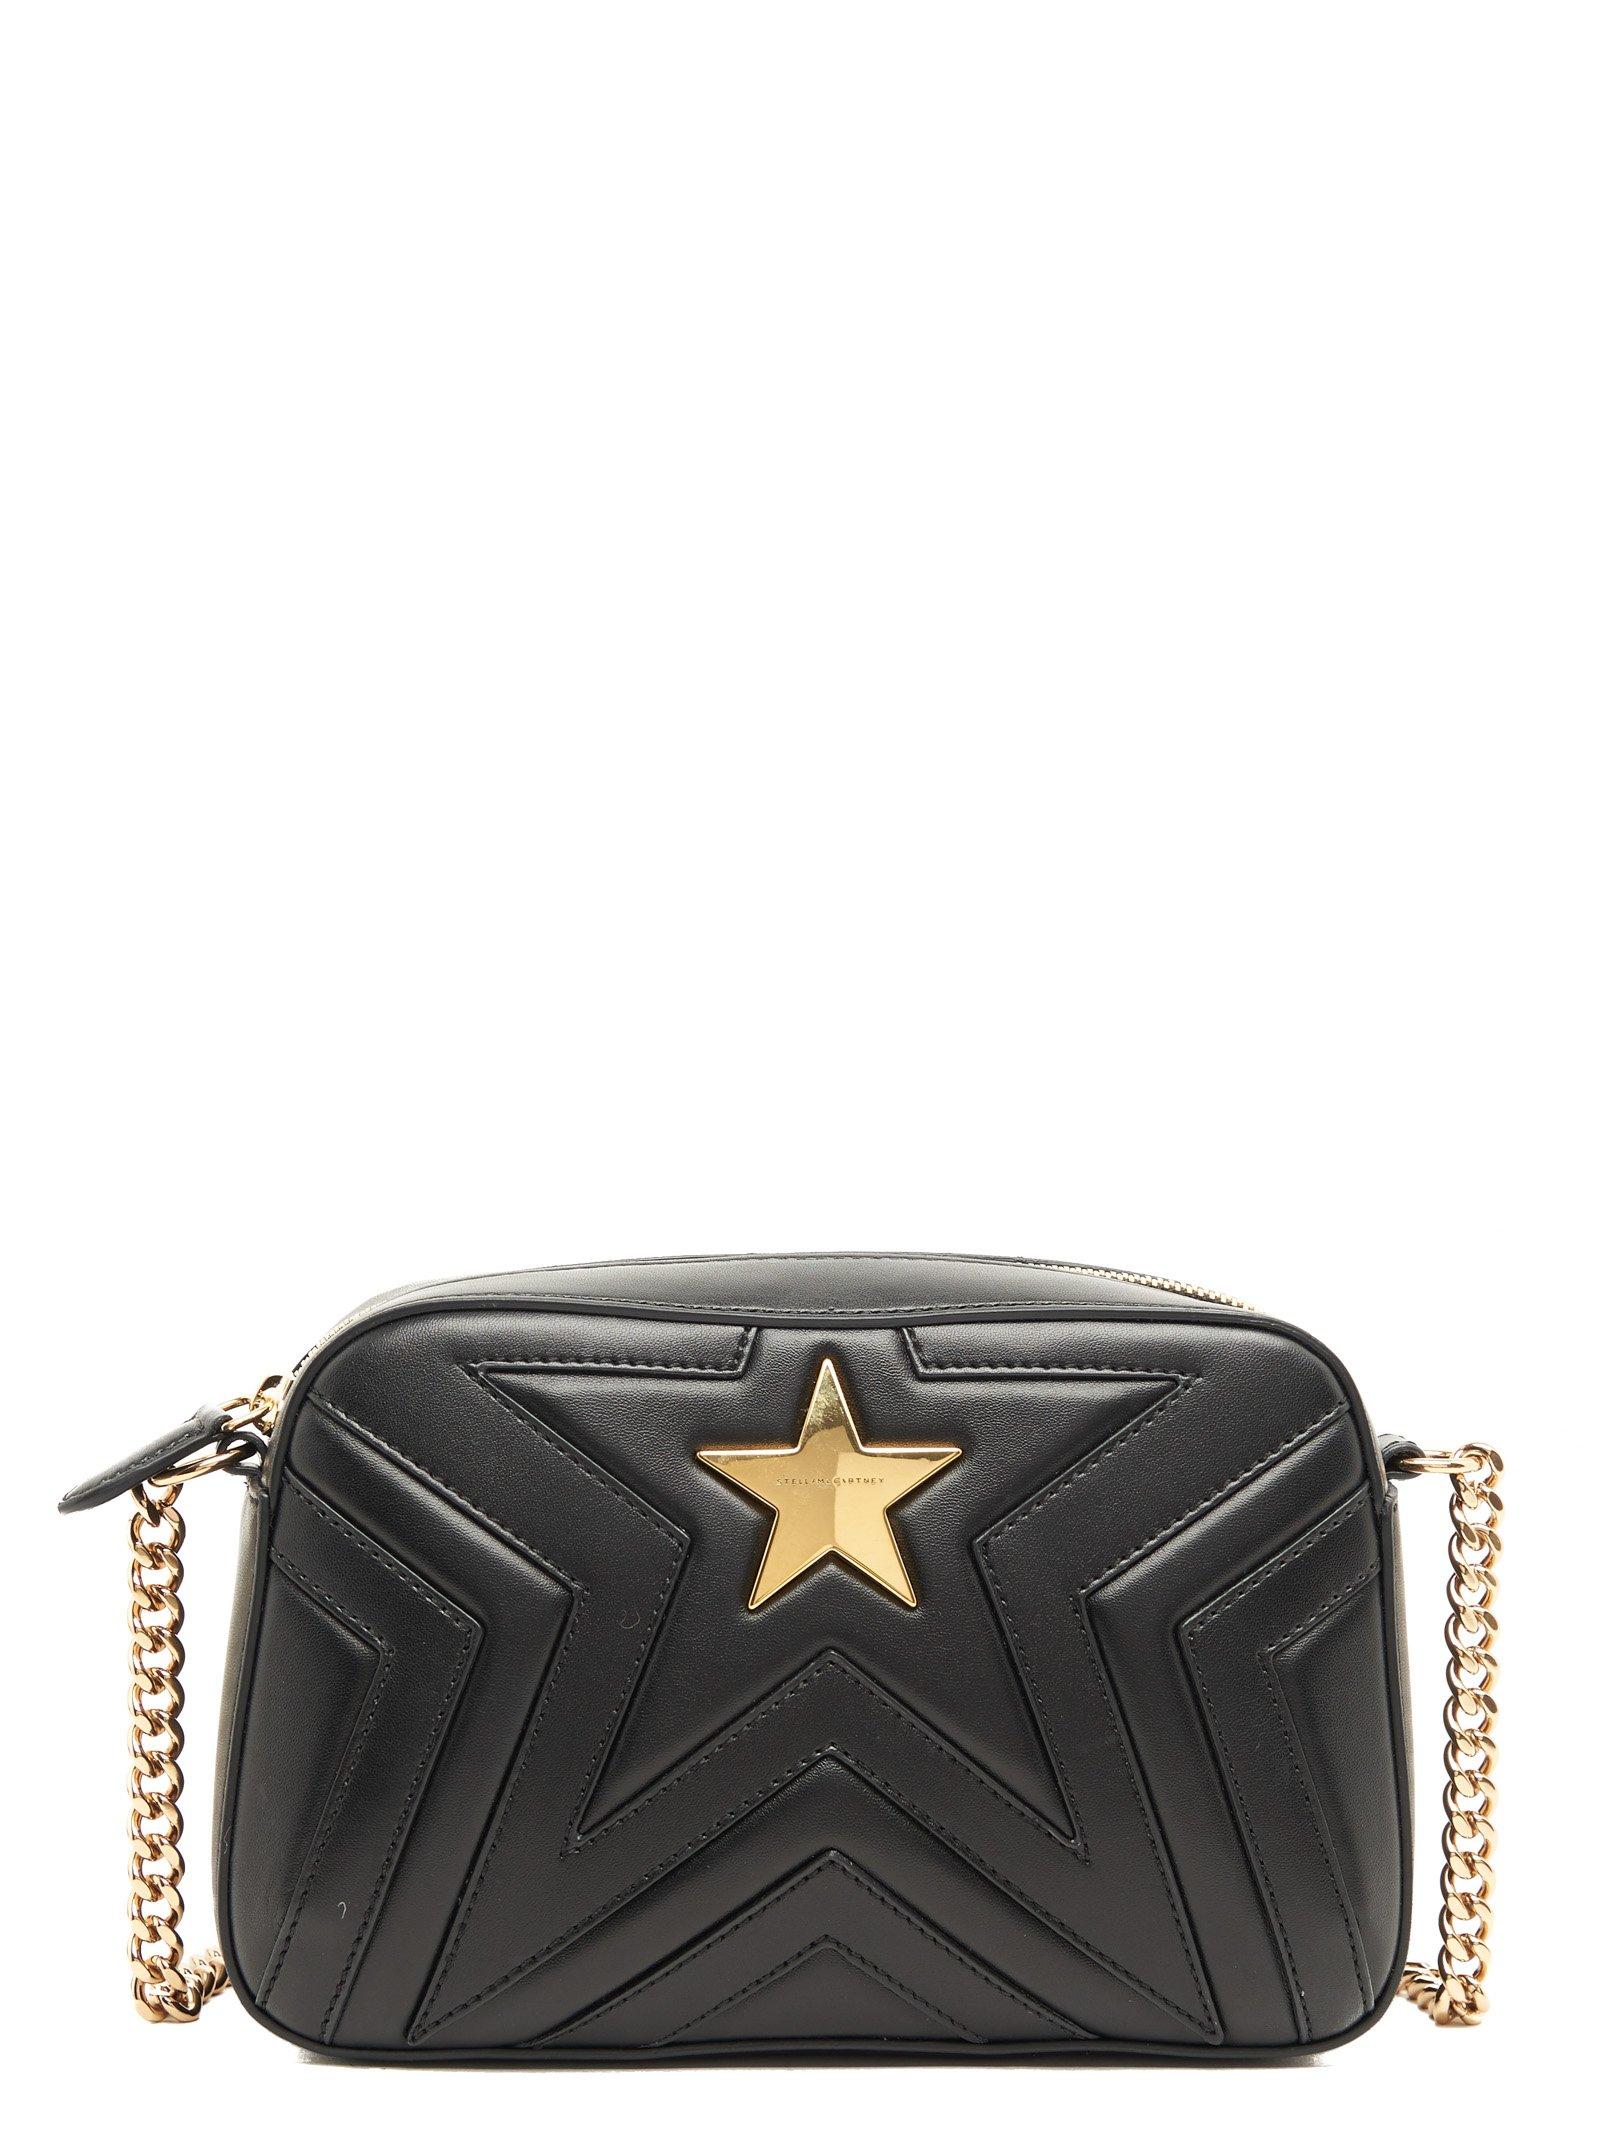 Stella McCartney 'stella Star' Crossbody Bag in Black - Lyst